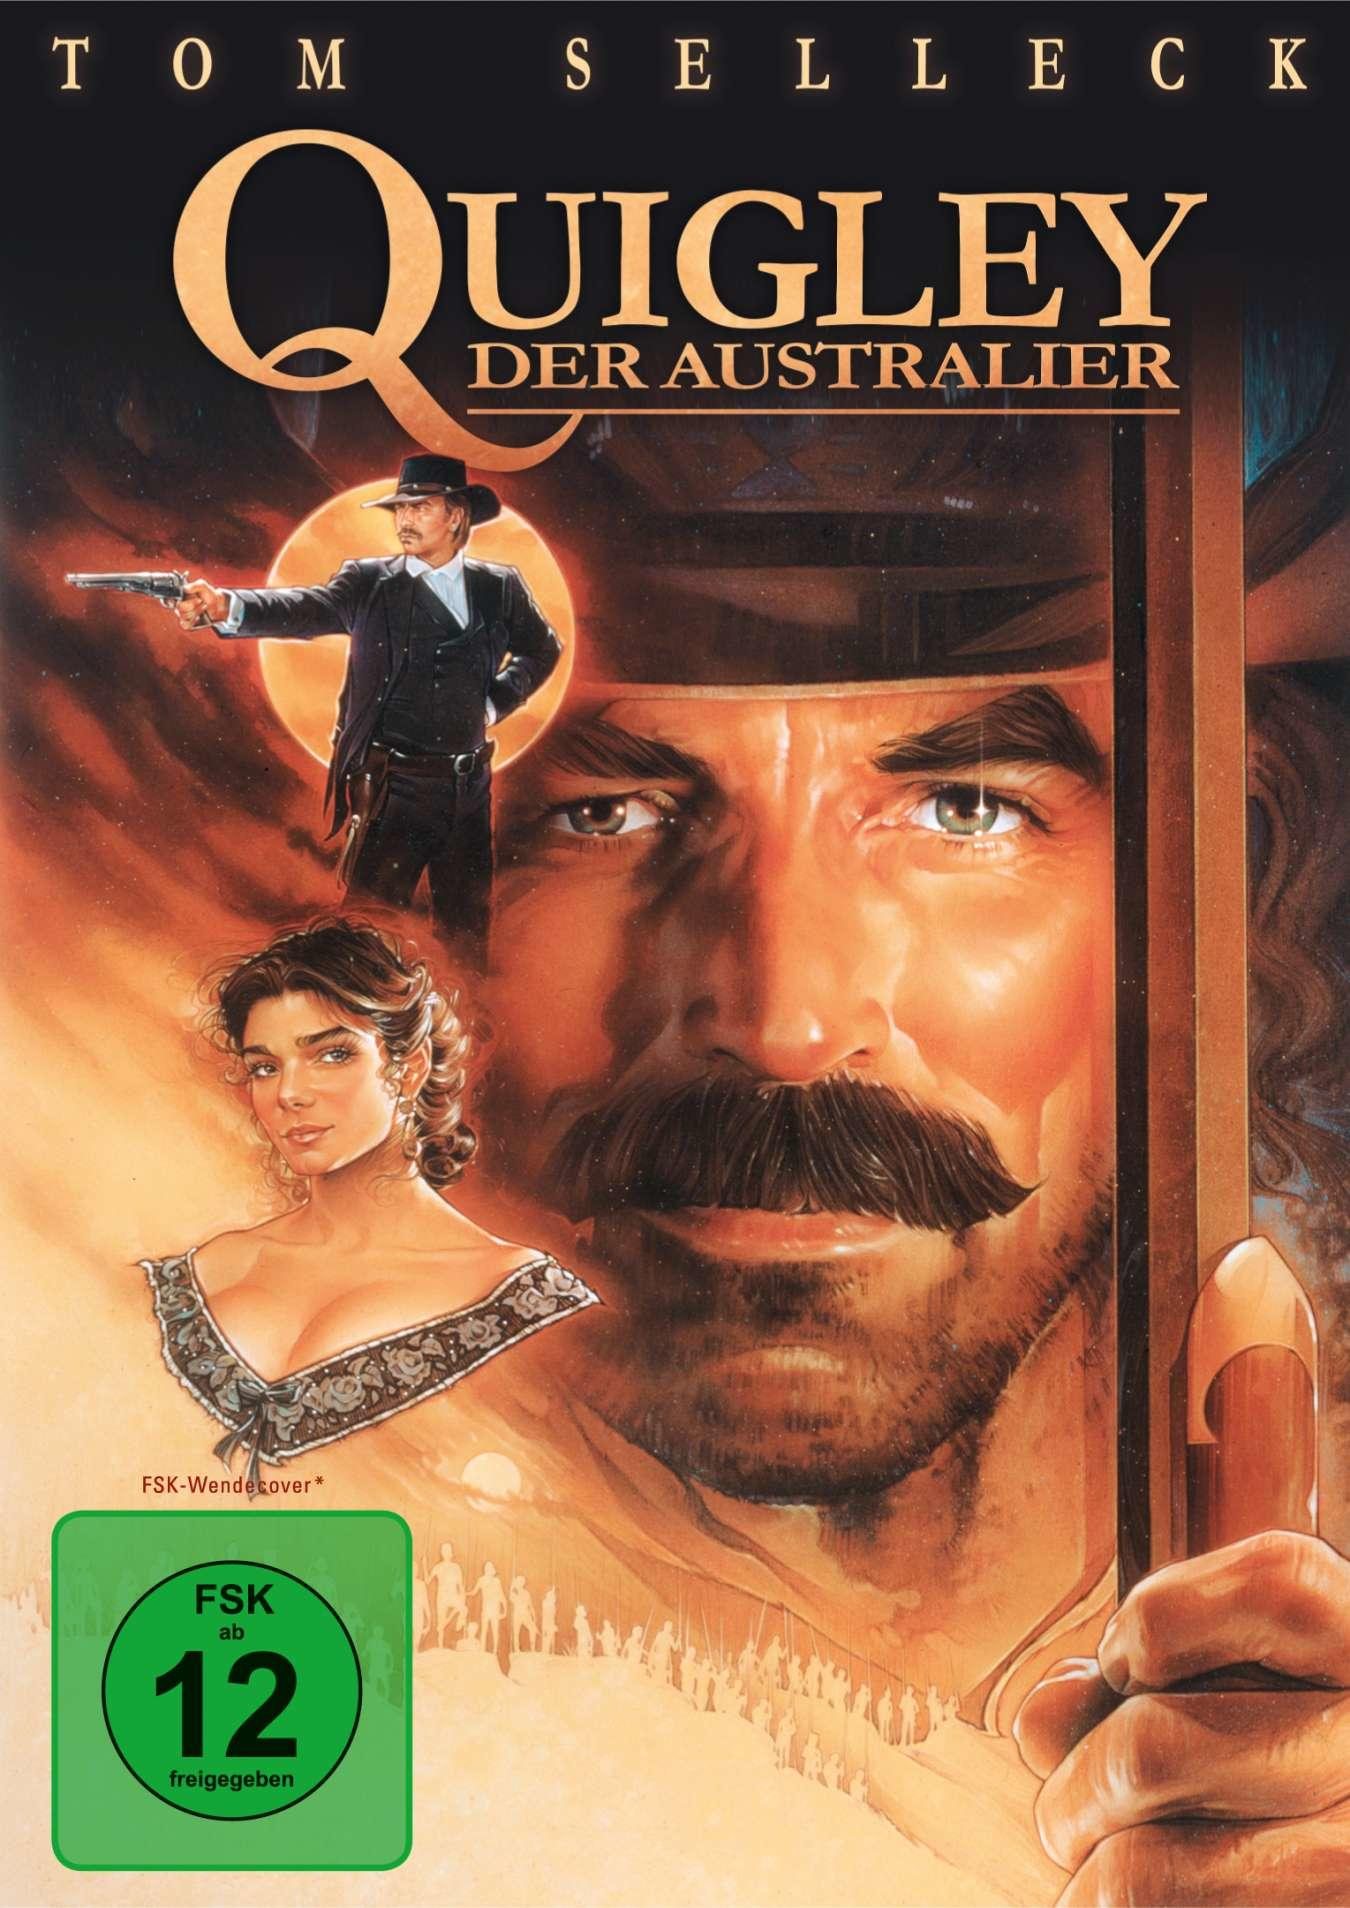 Quigley, DVD der Australier